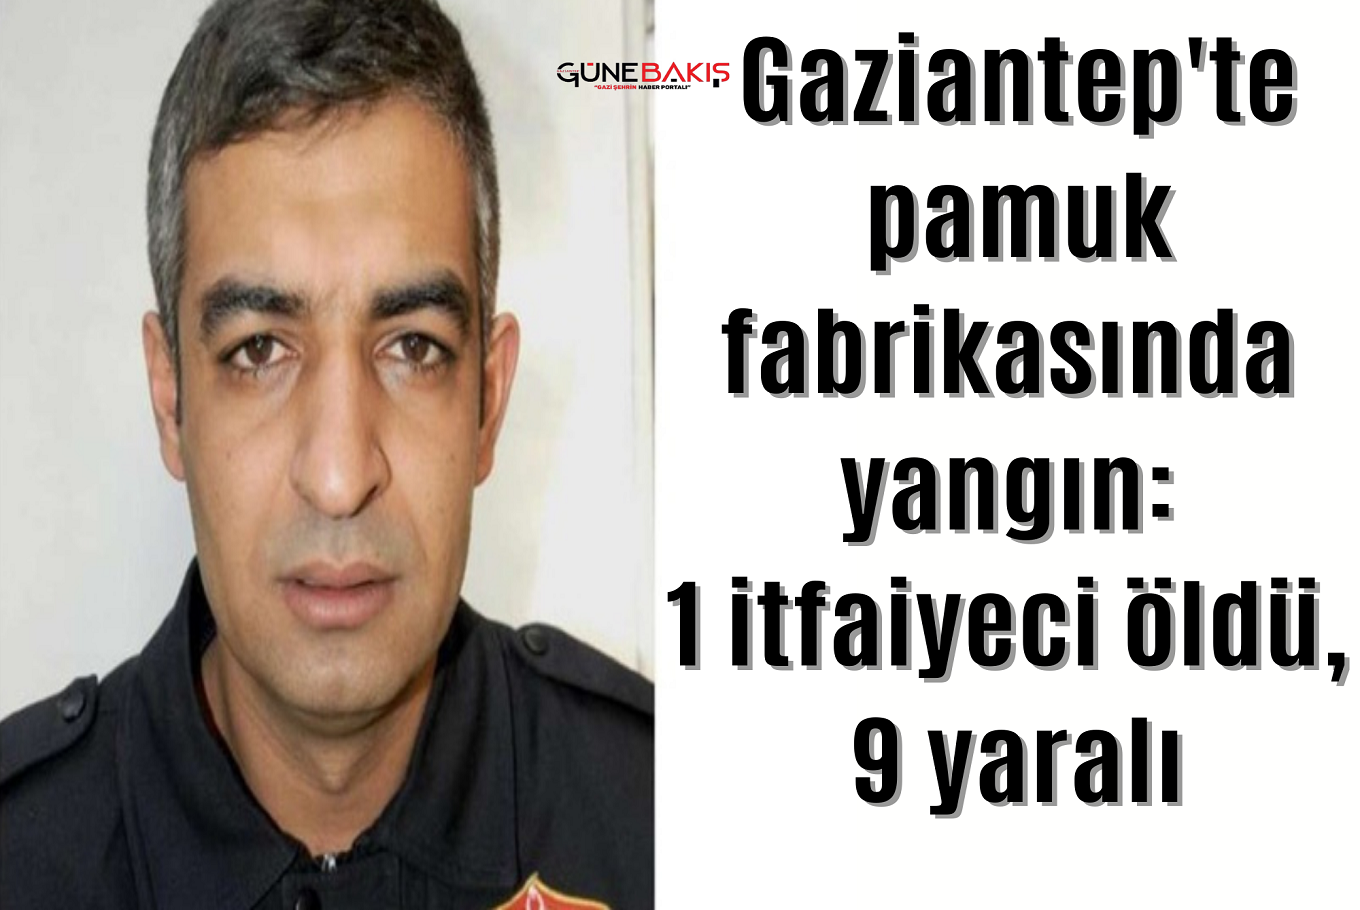 Gaziantep'te pamuk fabrikasında yangın: 1 itfaiyeci öldü, 9 yaralı